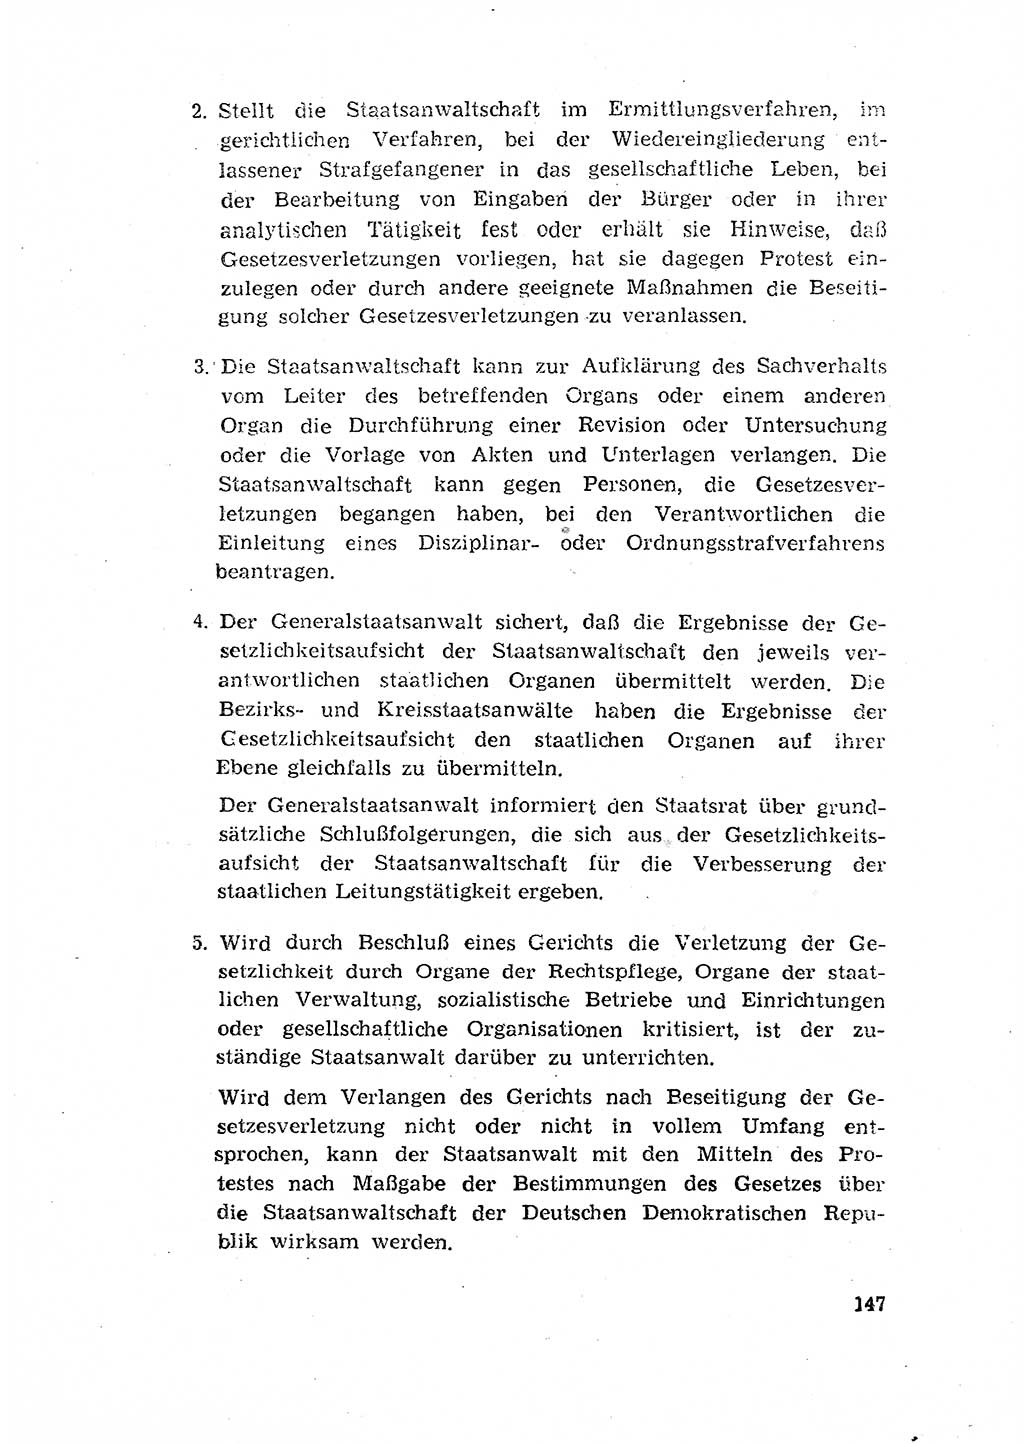 Rechtspflegeerlaß [Deutsche Demokratische Republik (DDR)] 1963, Seite 147 (R.-Pfl.-Erl. DDR 1963, S. 147)